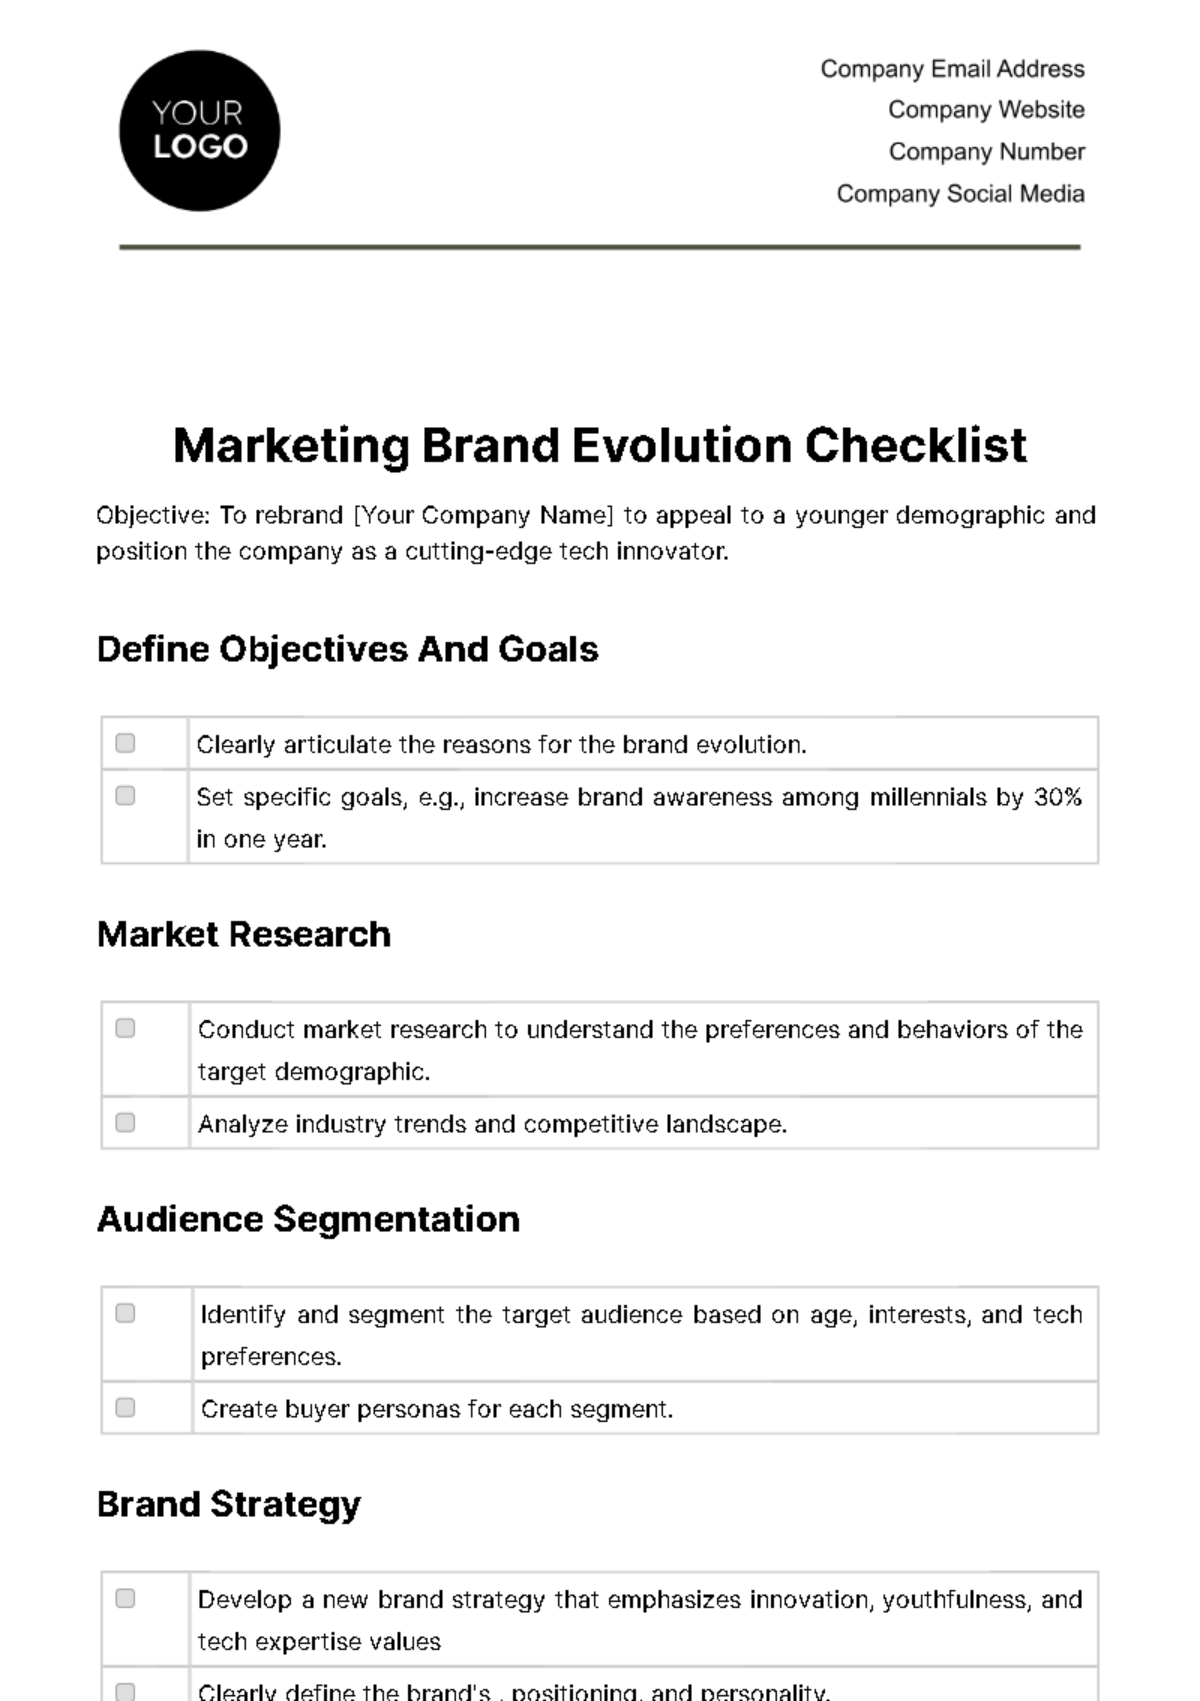 Marketing Brand Evolution Checklist Template